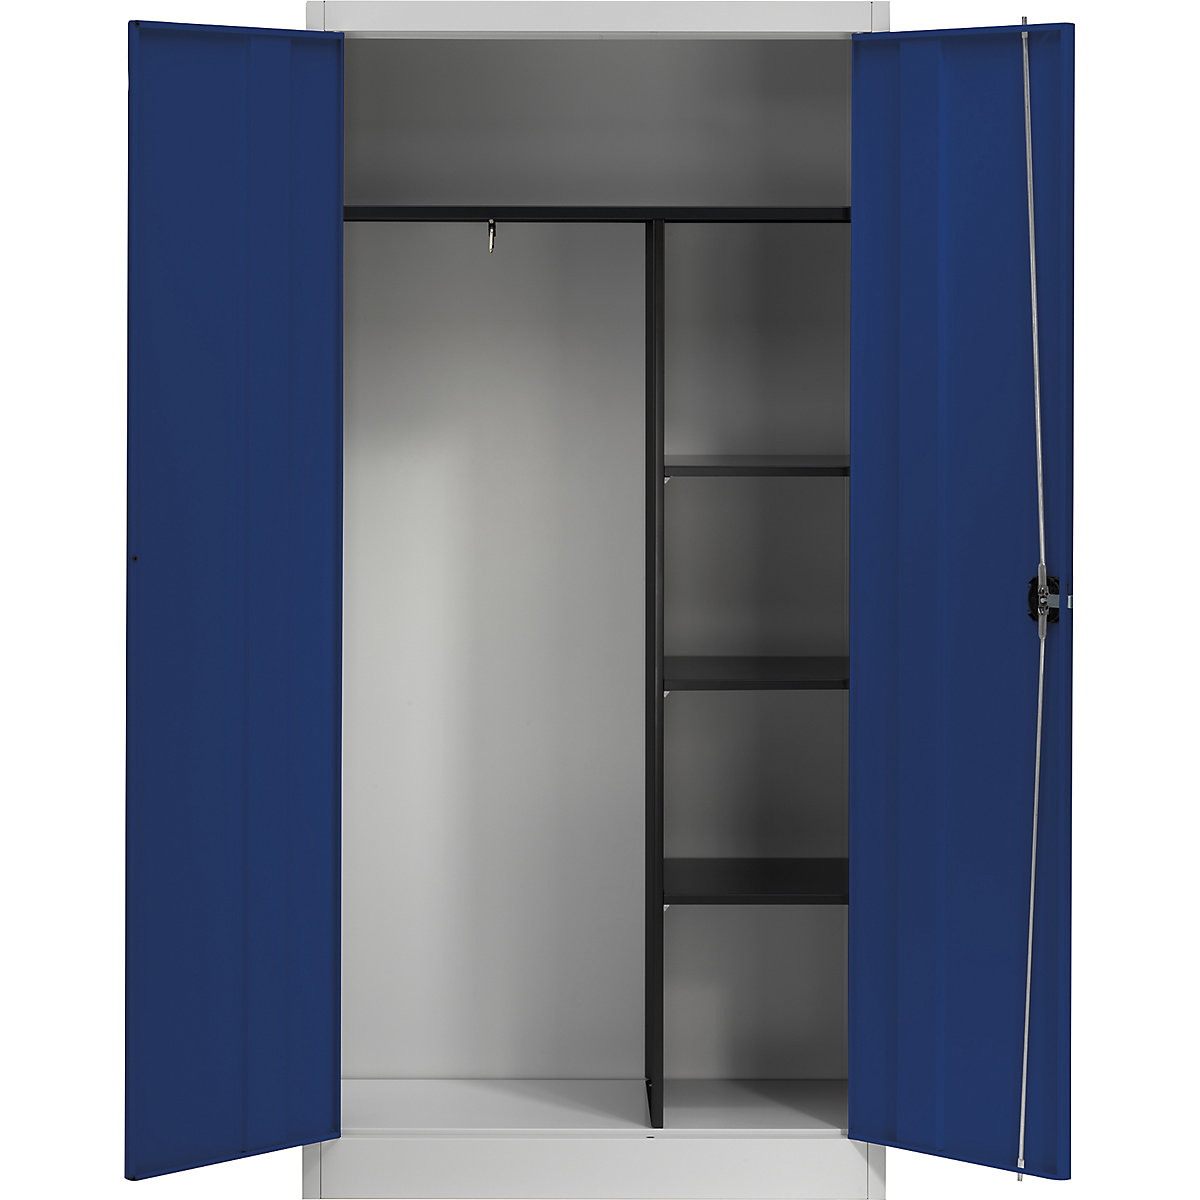 Čelični ormar s krilnim vratima – mauser, 3 kratke police i garderoba, u svijetlosivoj / ultramarin plavoj boji-5